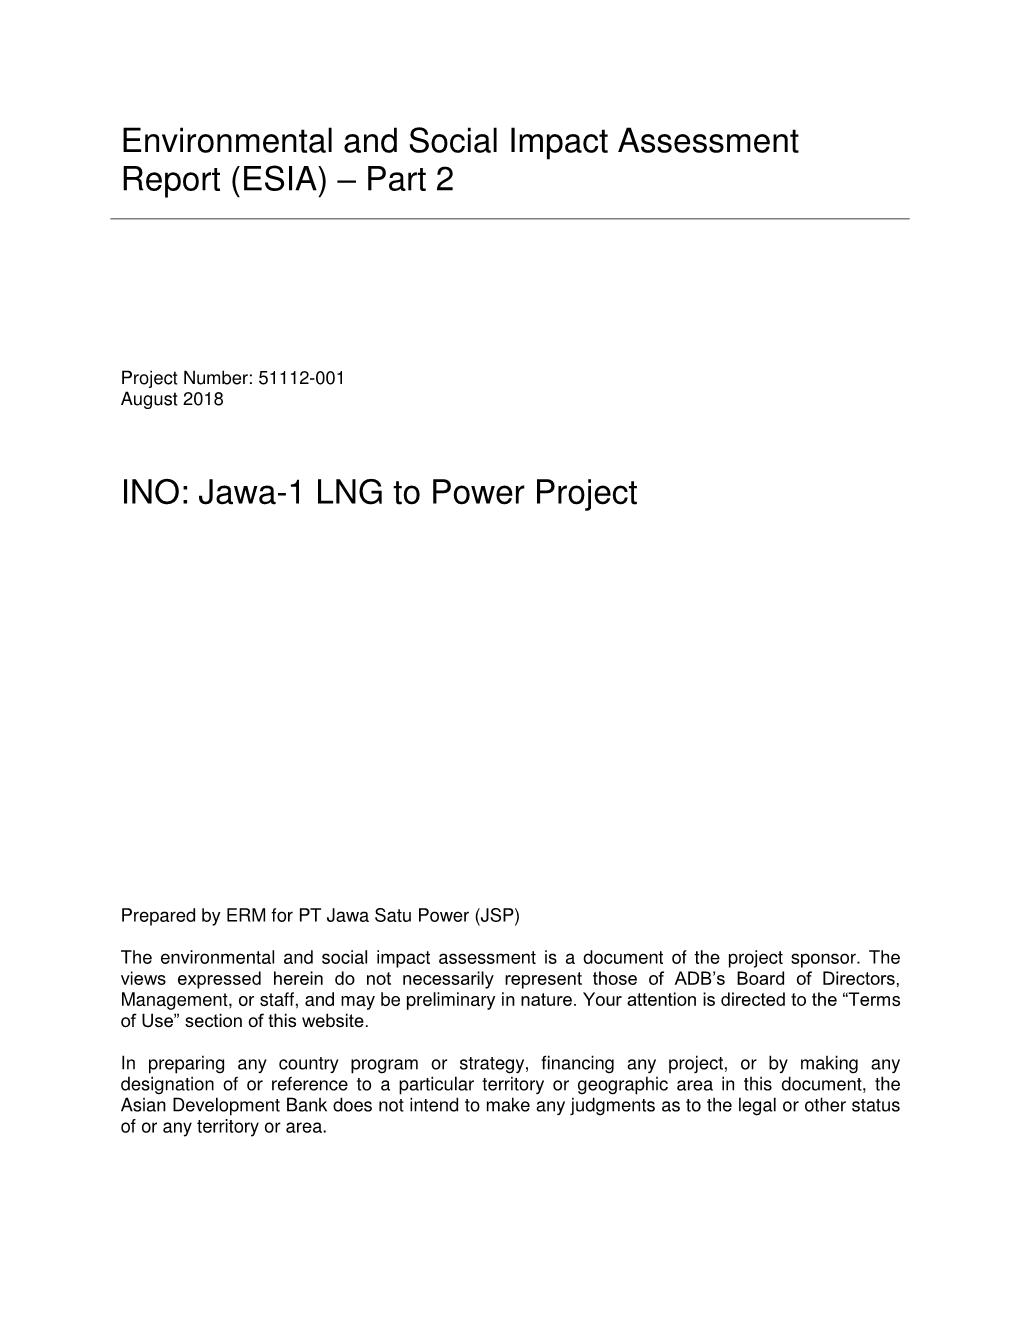 51112-001: Jawa-1 Liquefied Natural Gas-To